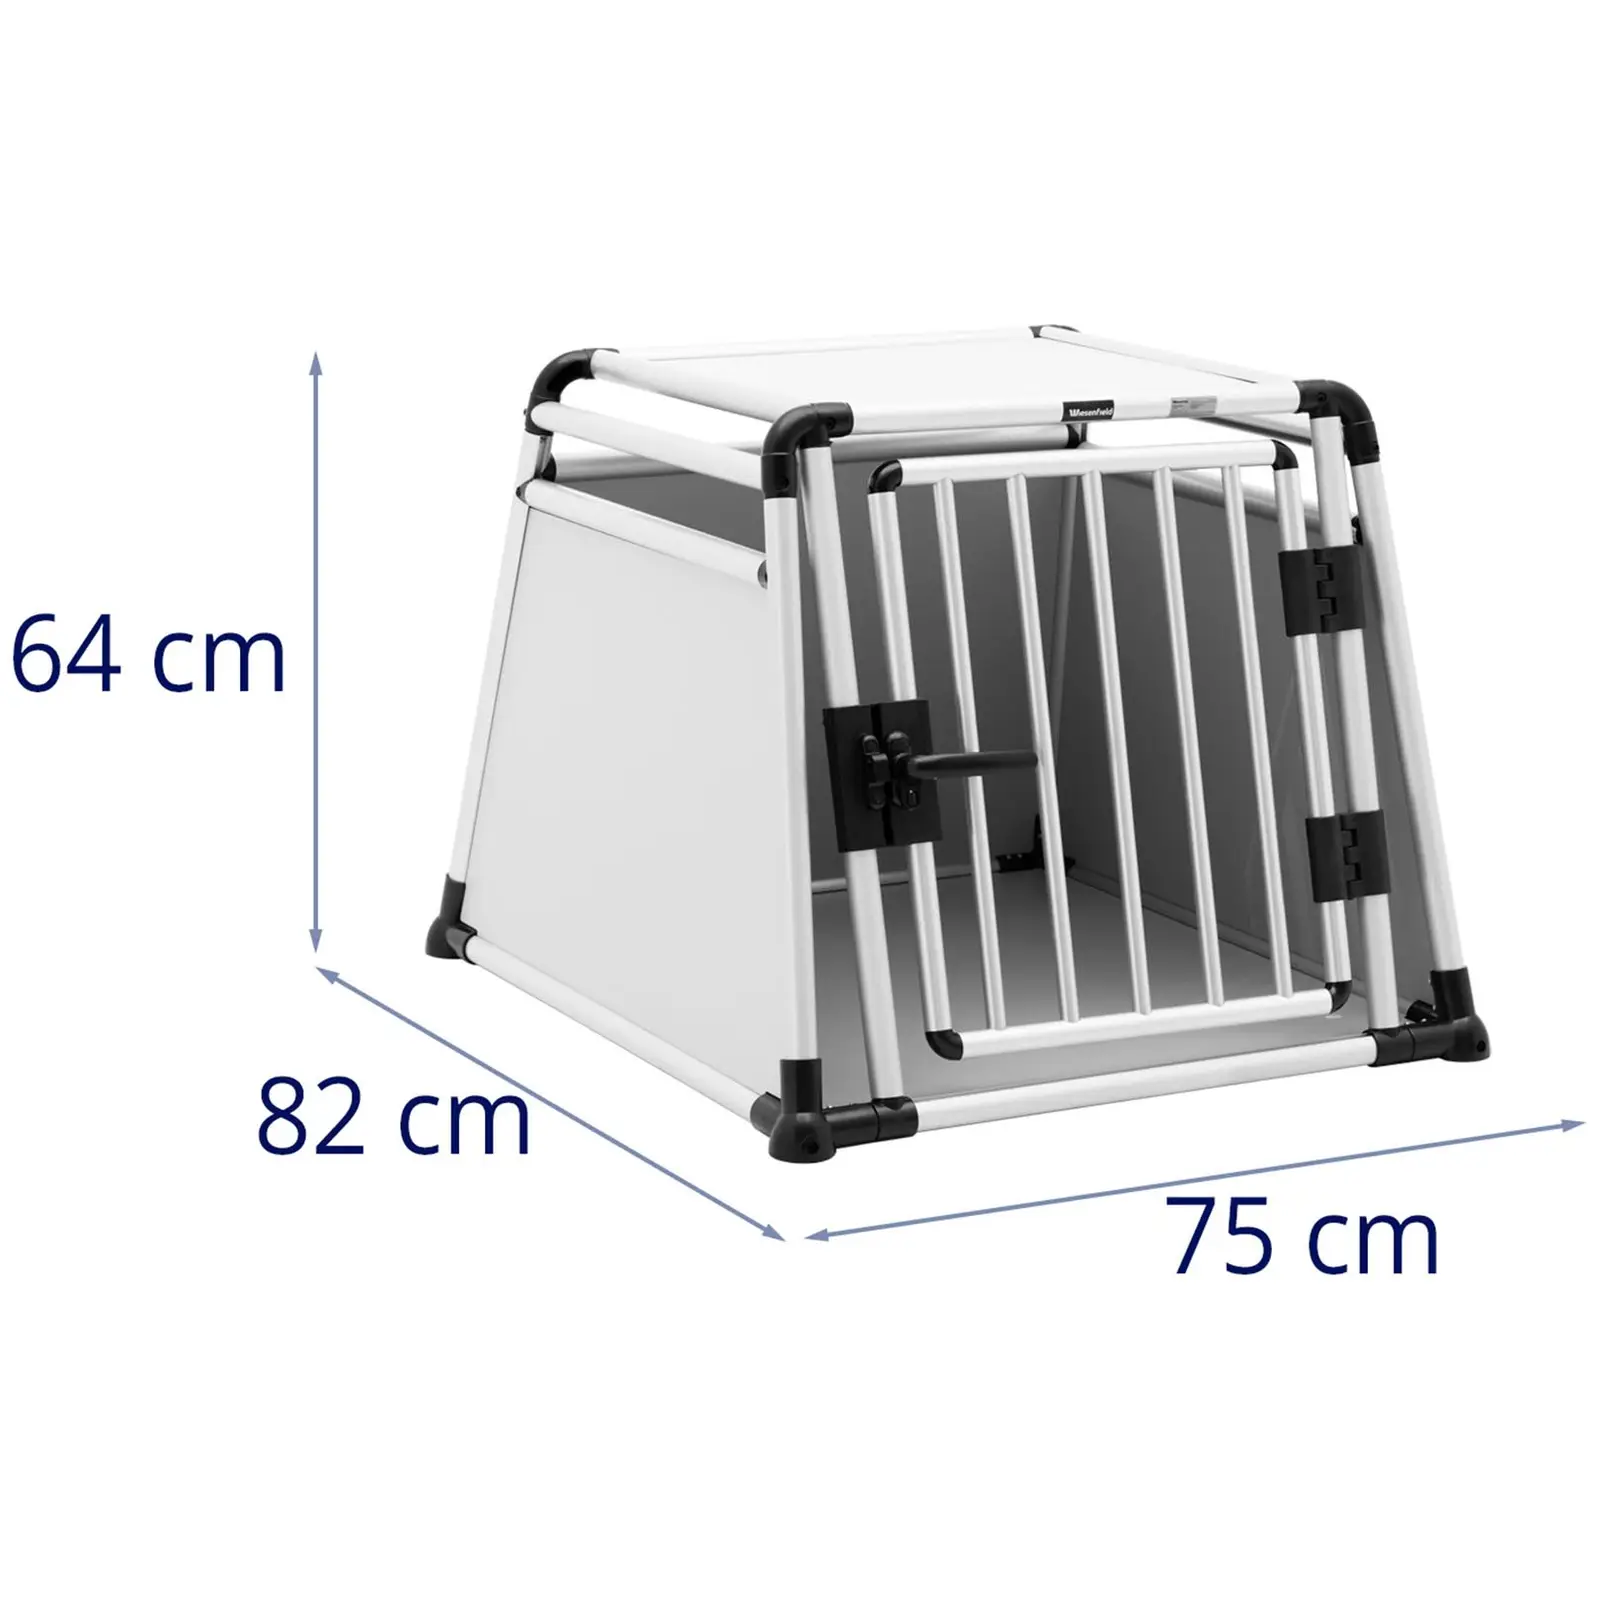 Caja transportadora de perros - aluminio - trapezoidal - 82 x 75 x 64 cm